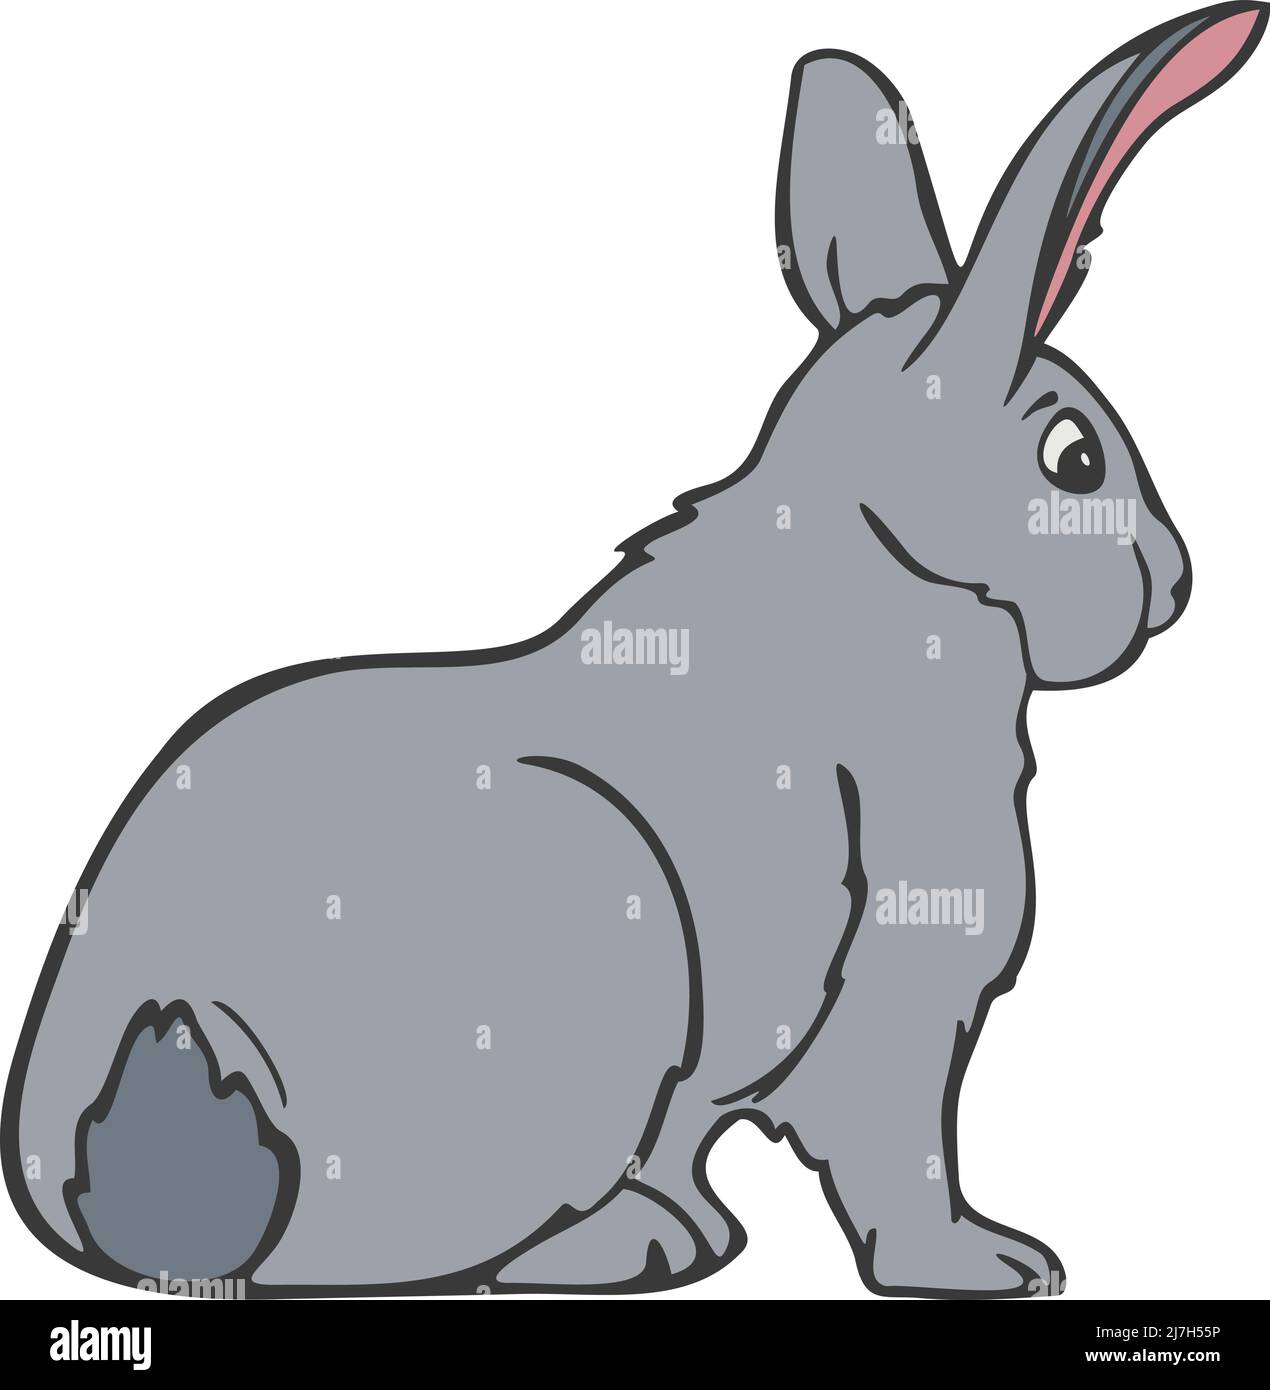 Illustrazione vettoriale del coniglietto. Coniglio disegnato a mano colorato e raffigurato da una linea. Illustrazione Vettoriale